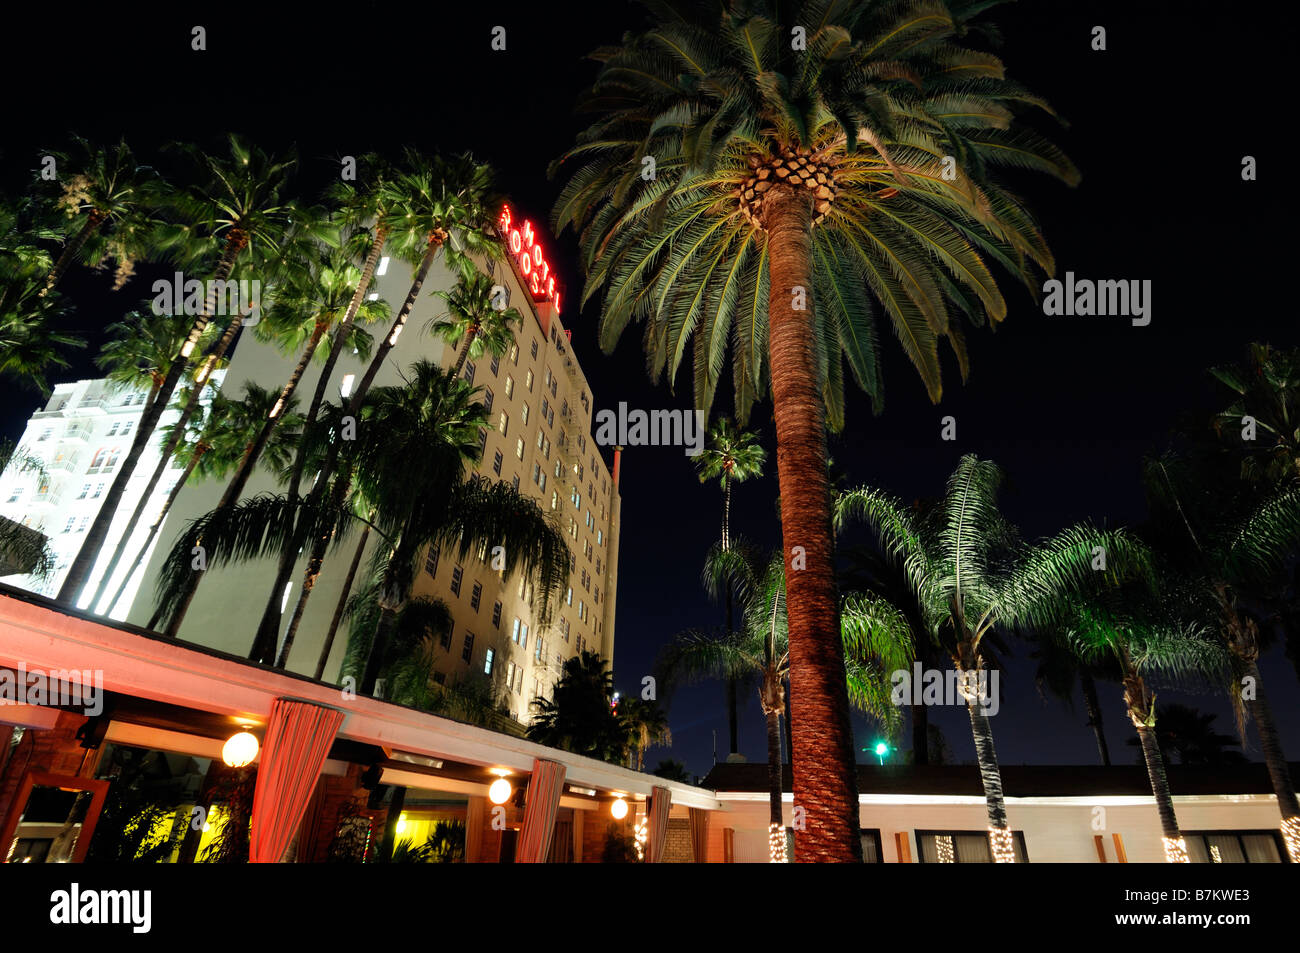 L'extérieur de l'hôtel Roosevelt de hollywood boulevard los angeles california célèbre résident résidence infâme palmier nuit nuit Banque D'Images